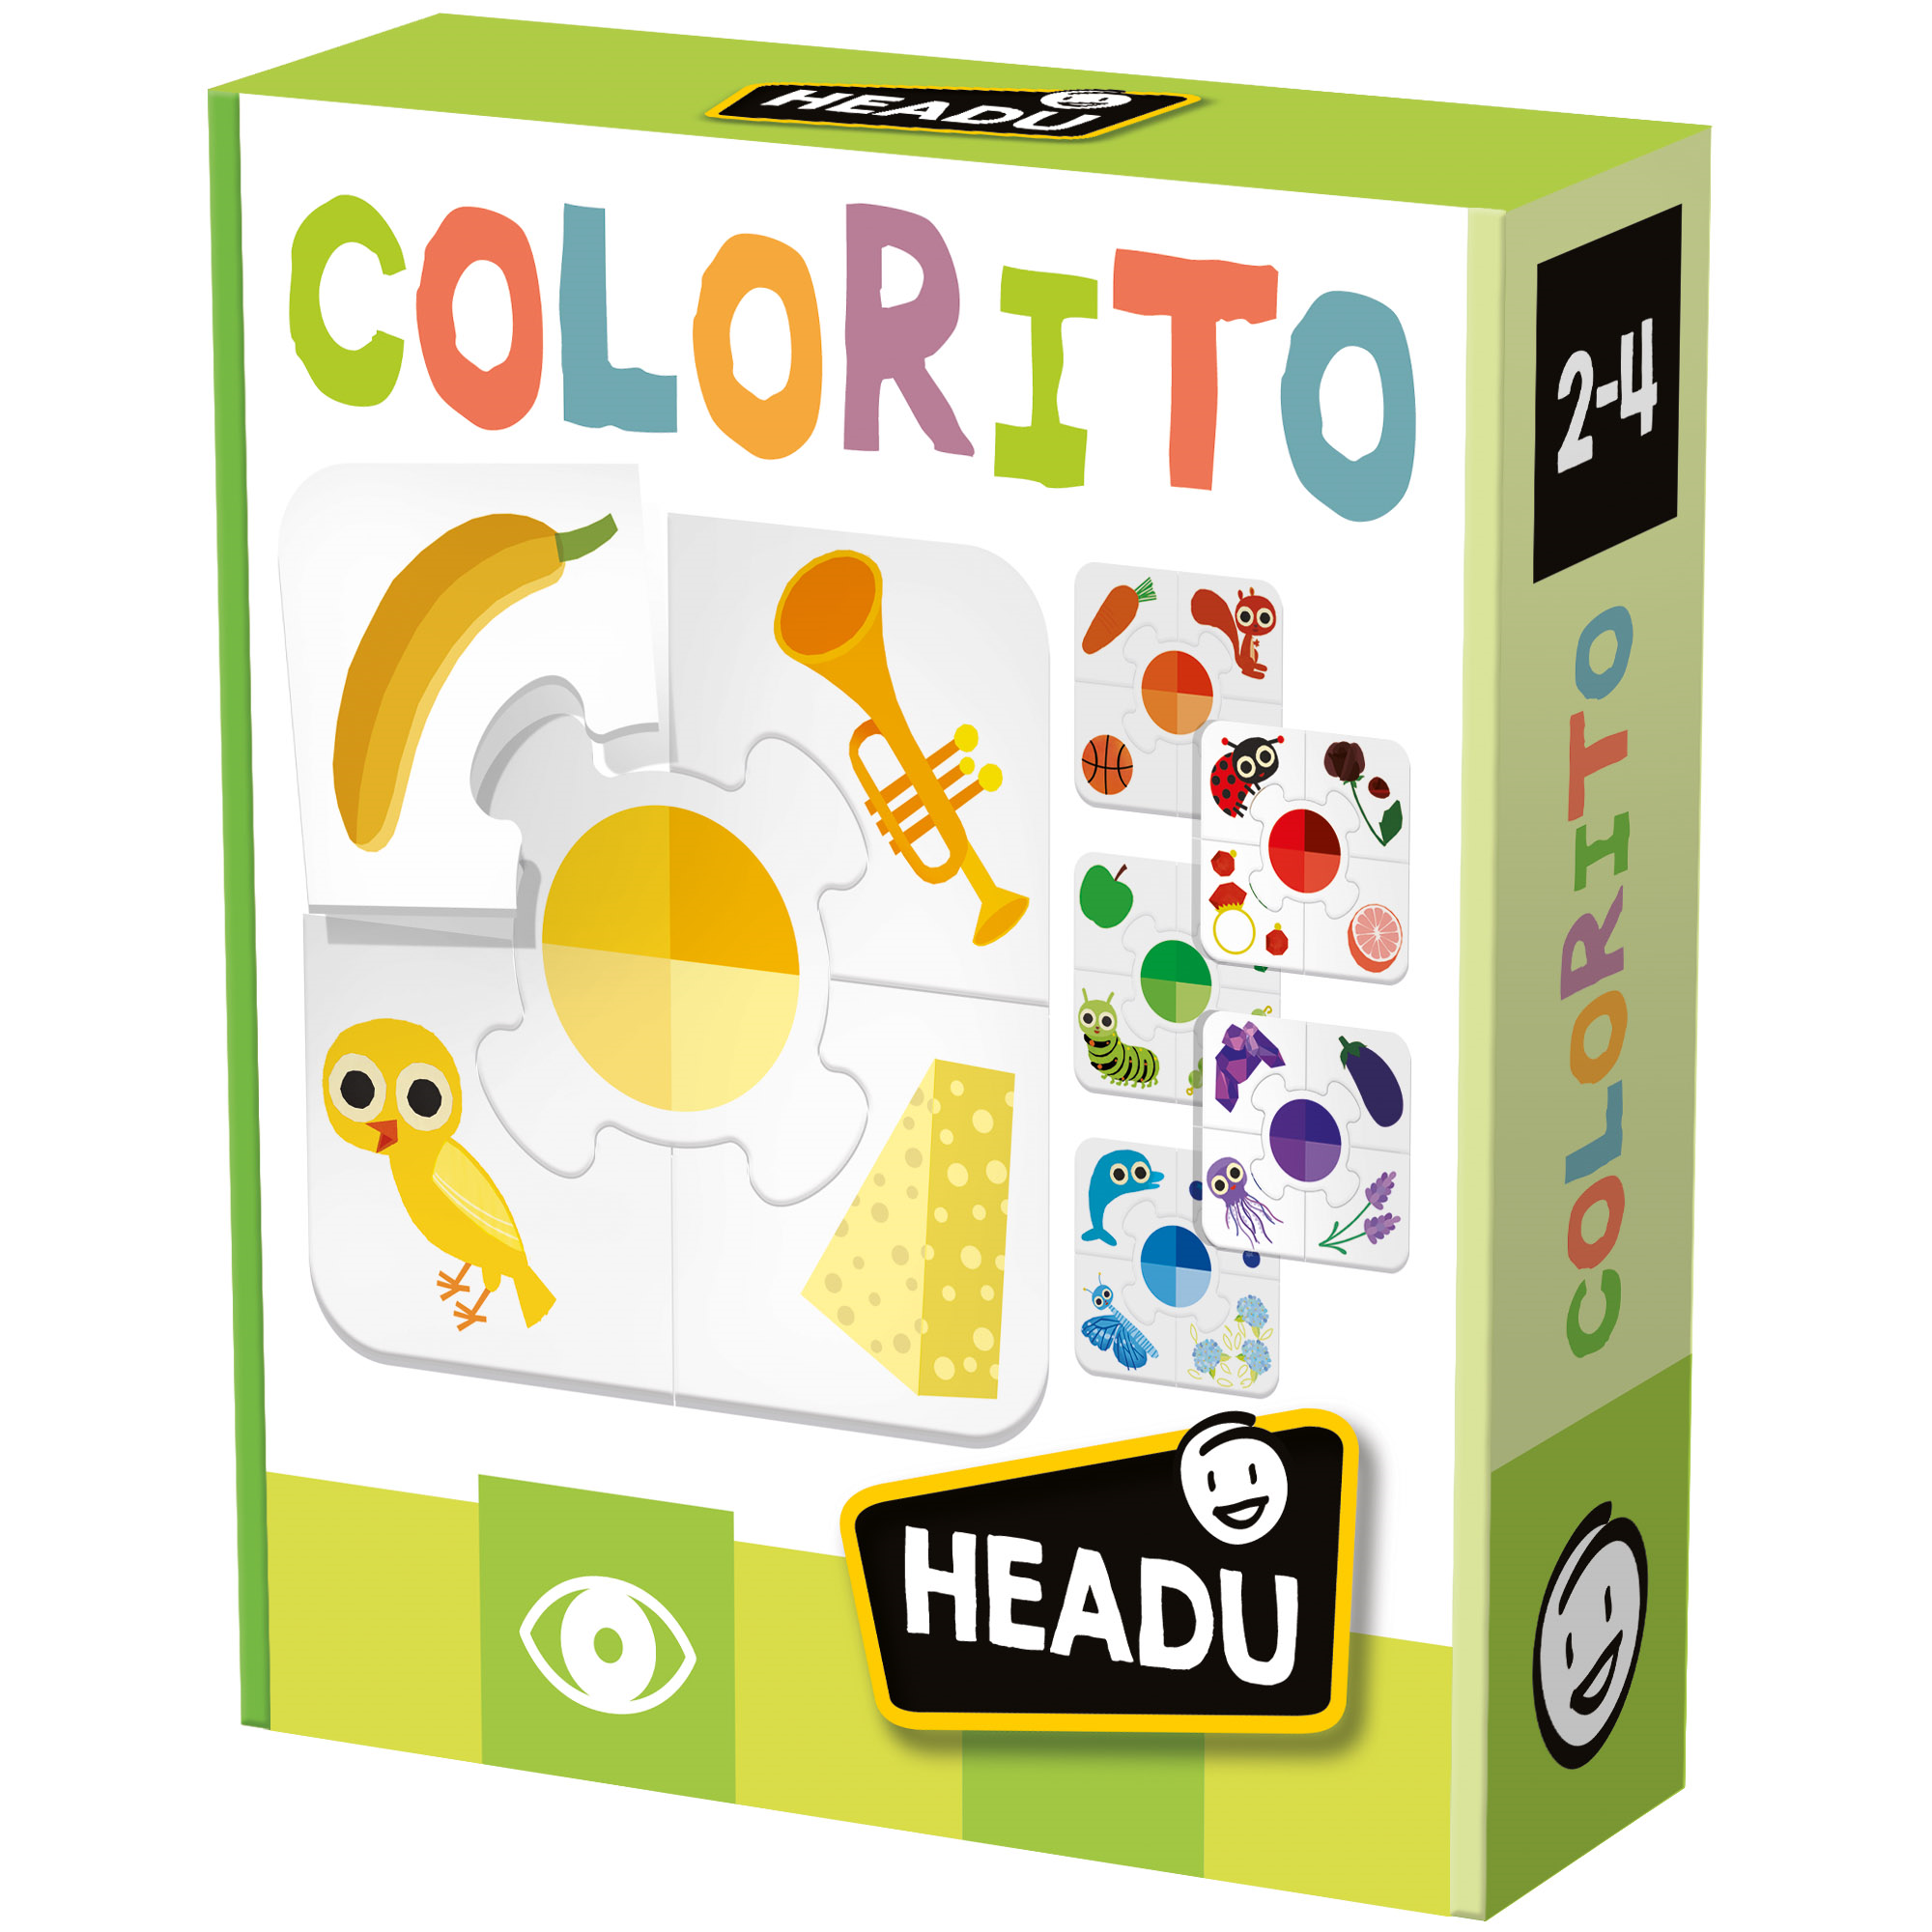 Colorito. riconosci e associa i colori! teacher tested	2-4 - HEADU